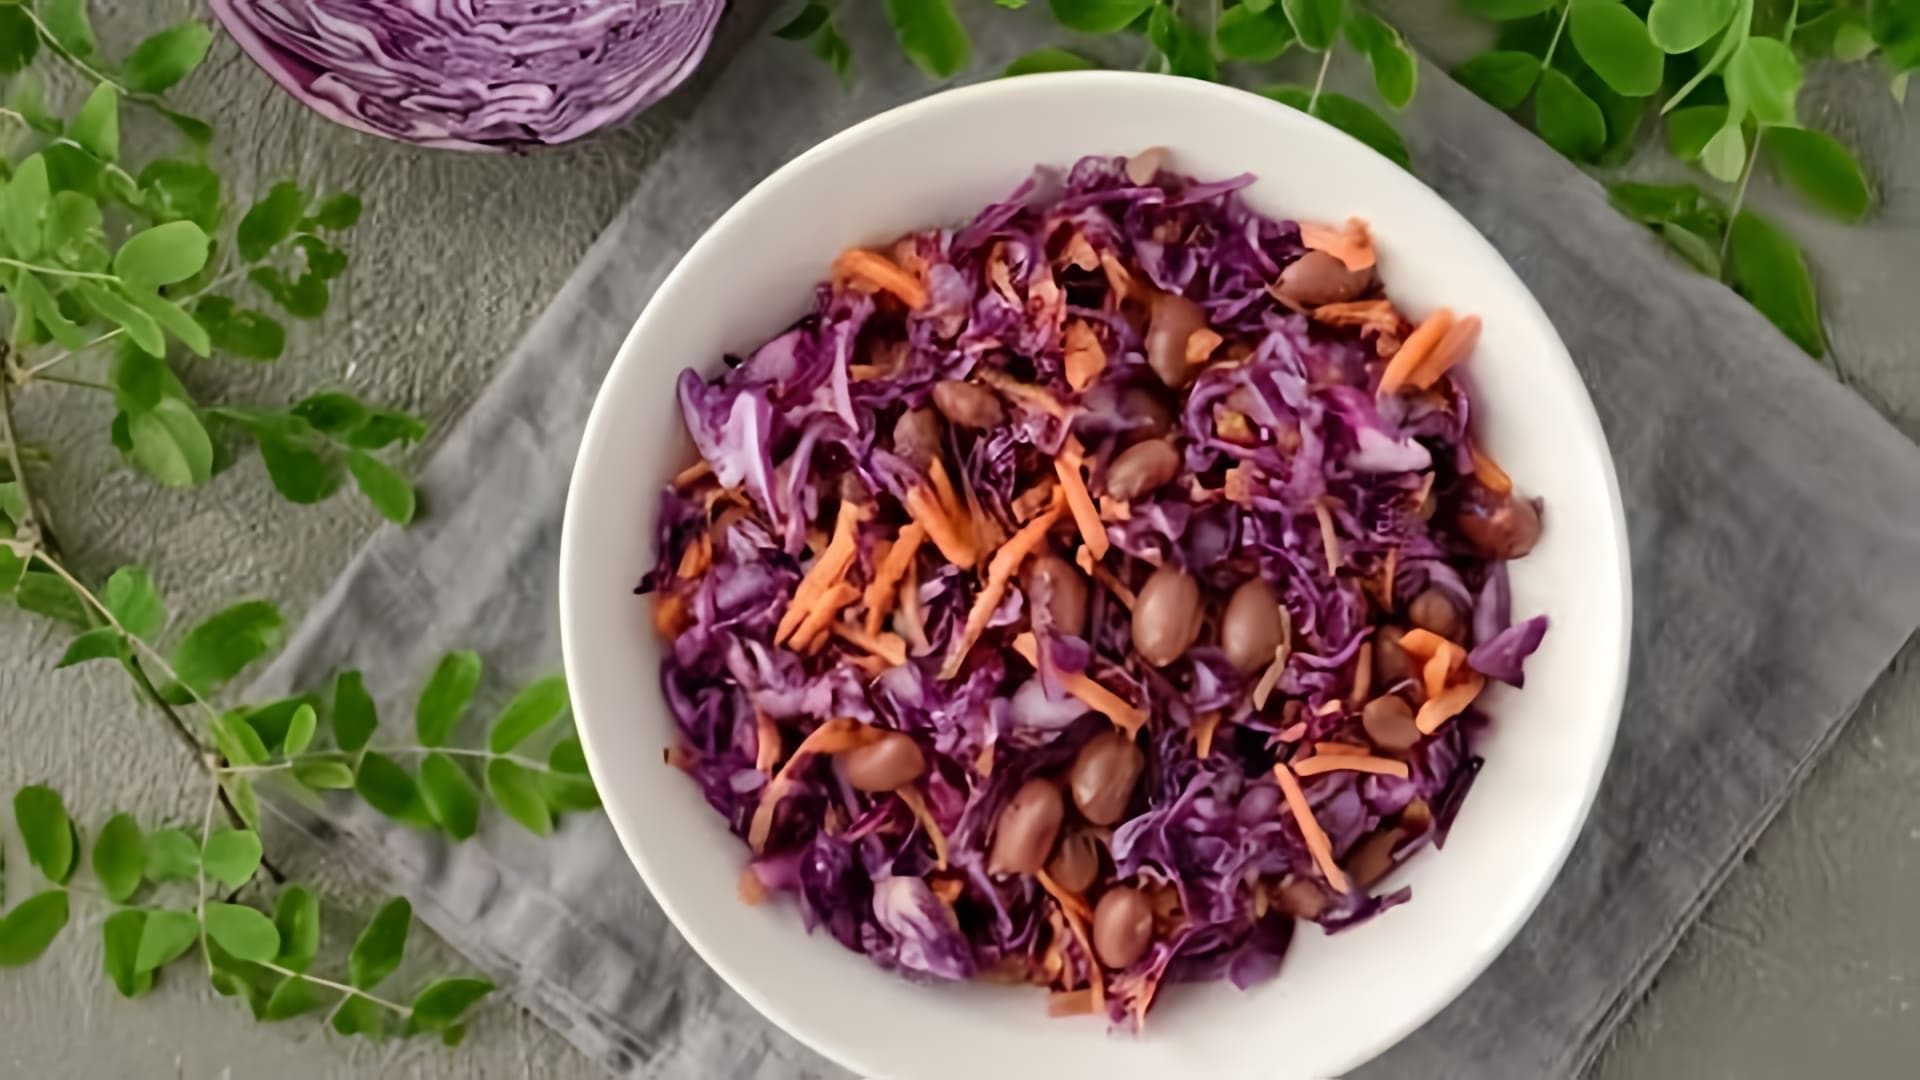 В этом видео демонстрируется рецепт приготовления салата с красной капустой и красной фасолью